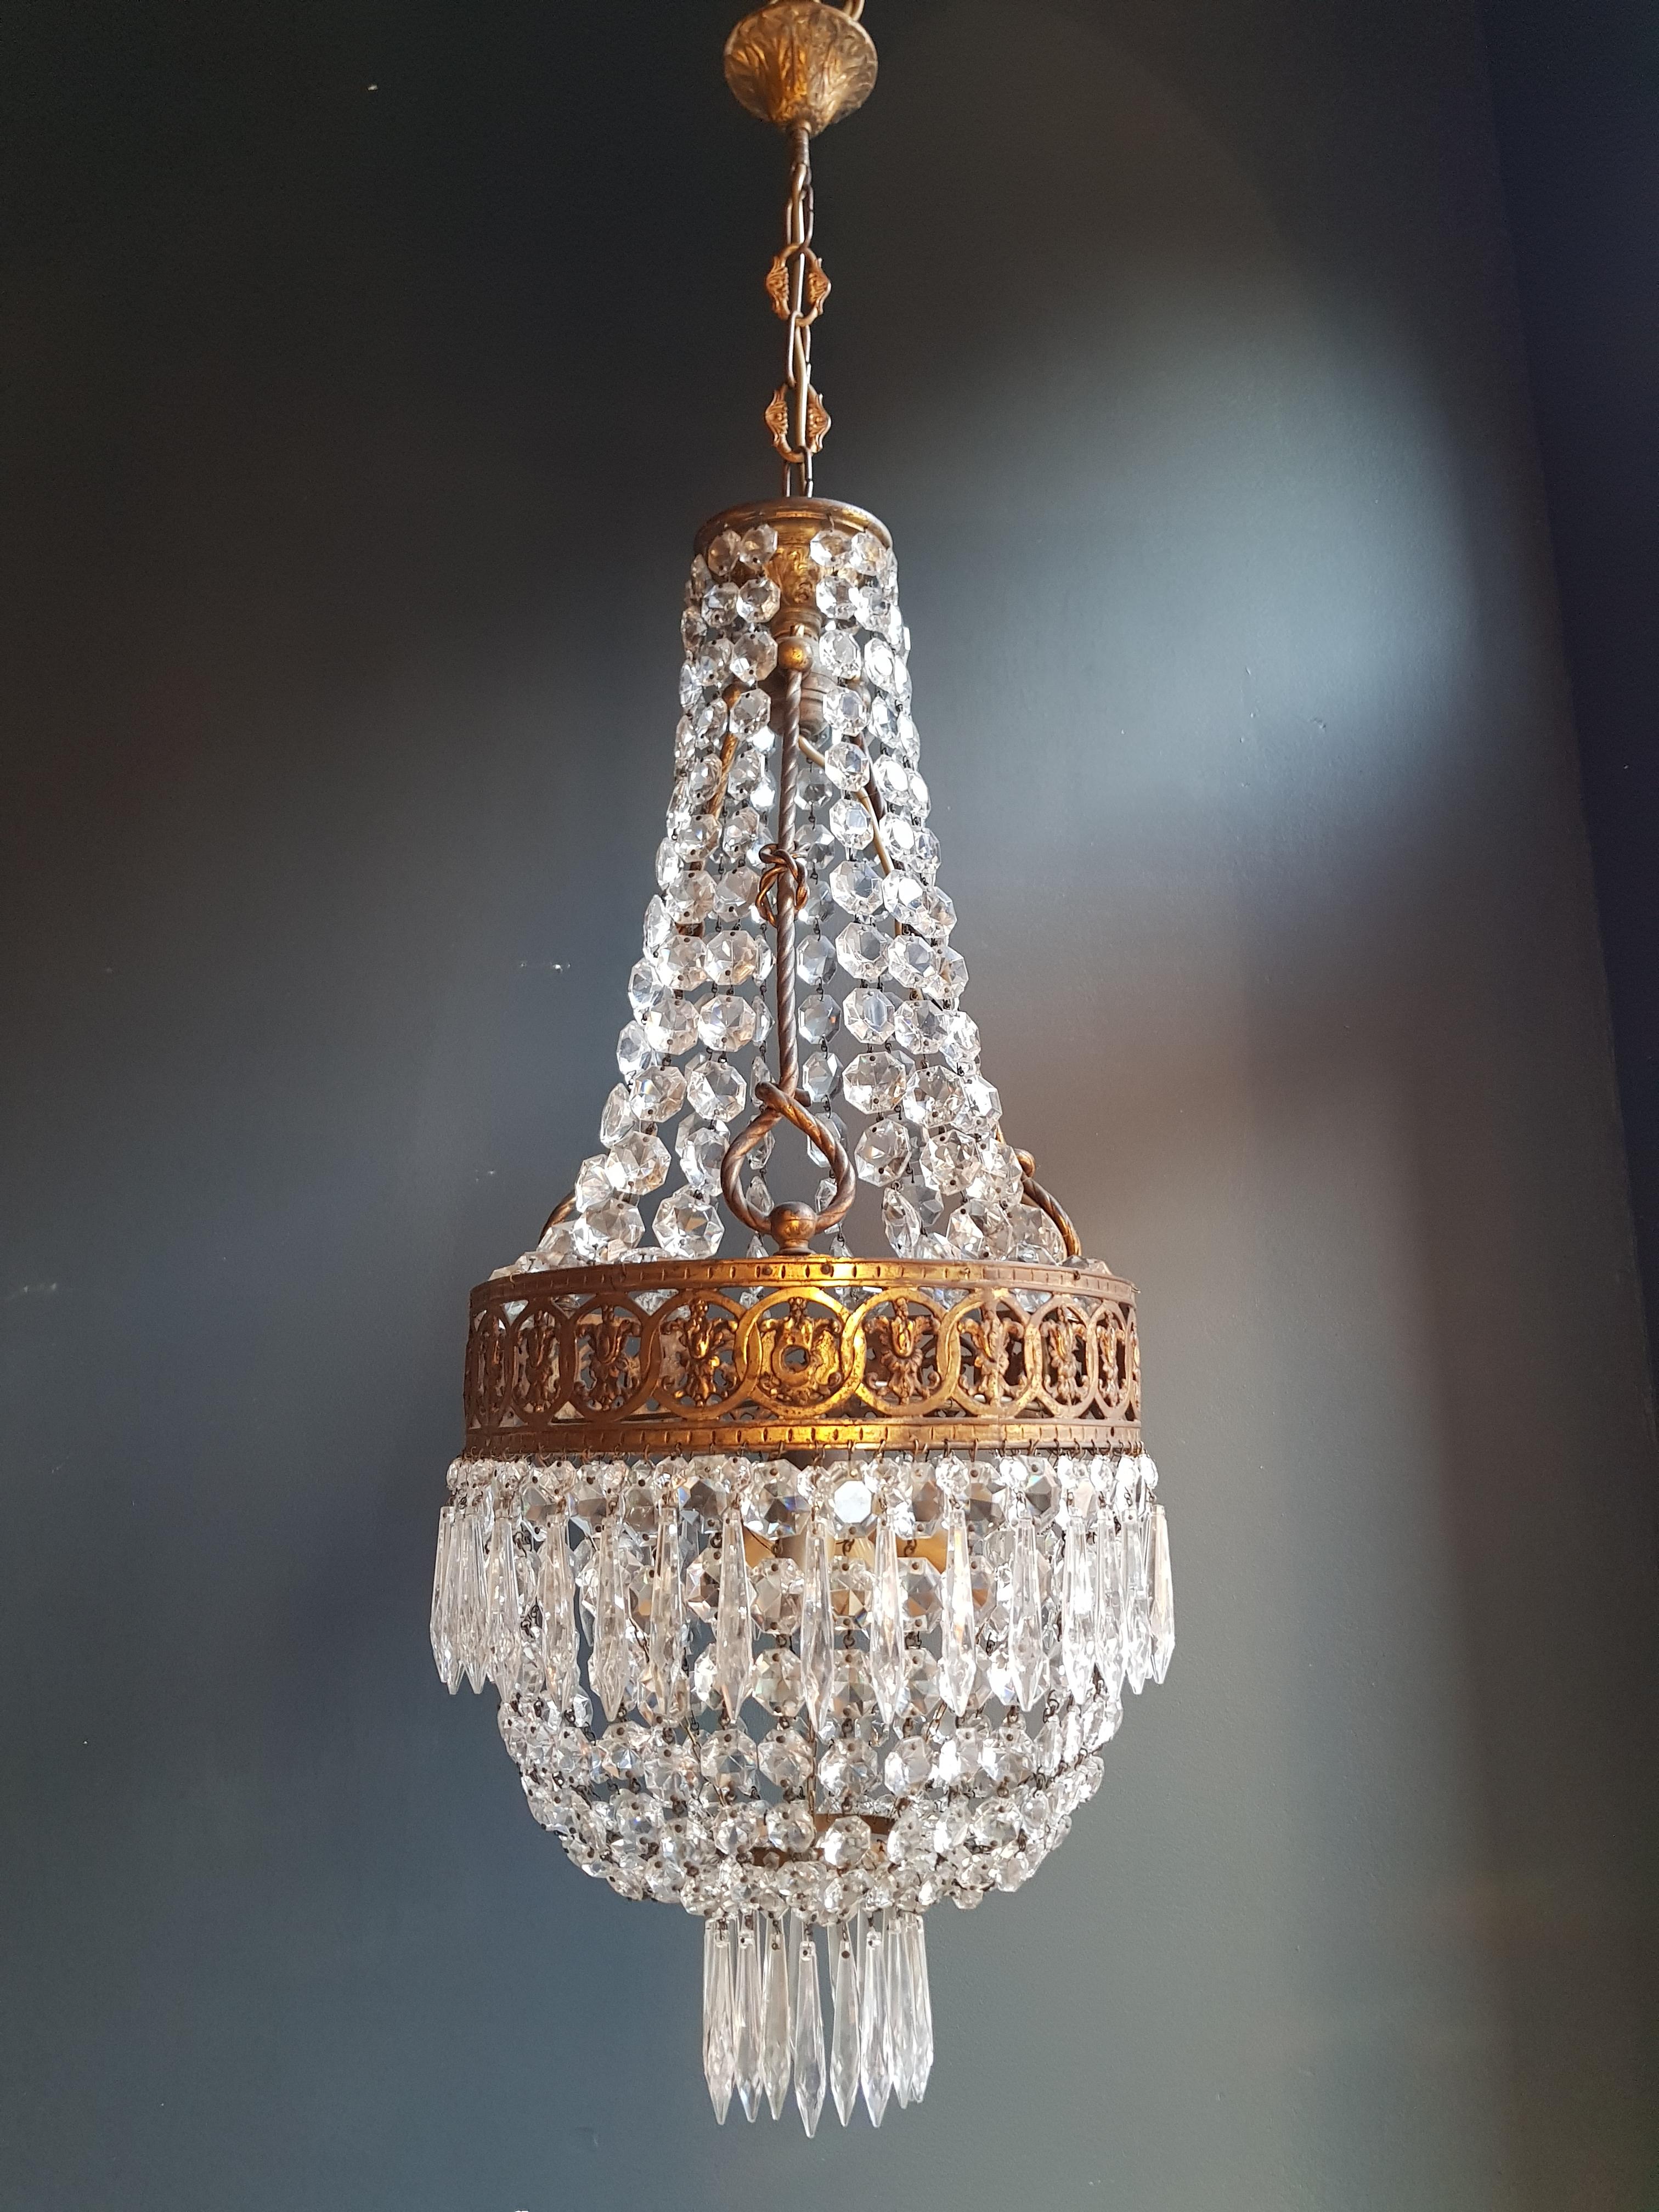 Basket Chandelier Brass Empire Crystal Lustre Ceiling Antique Art Nouveau 3